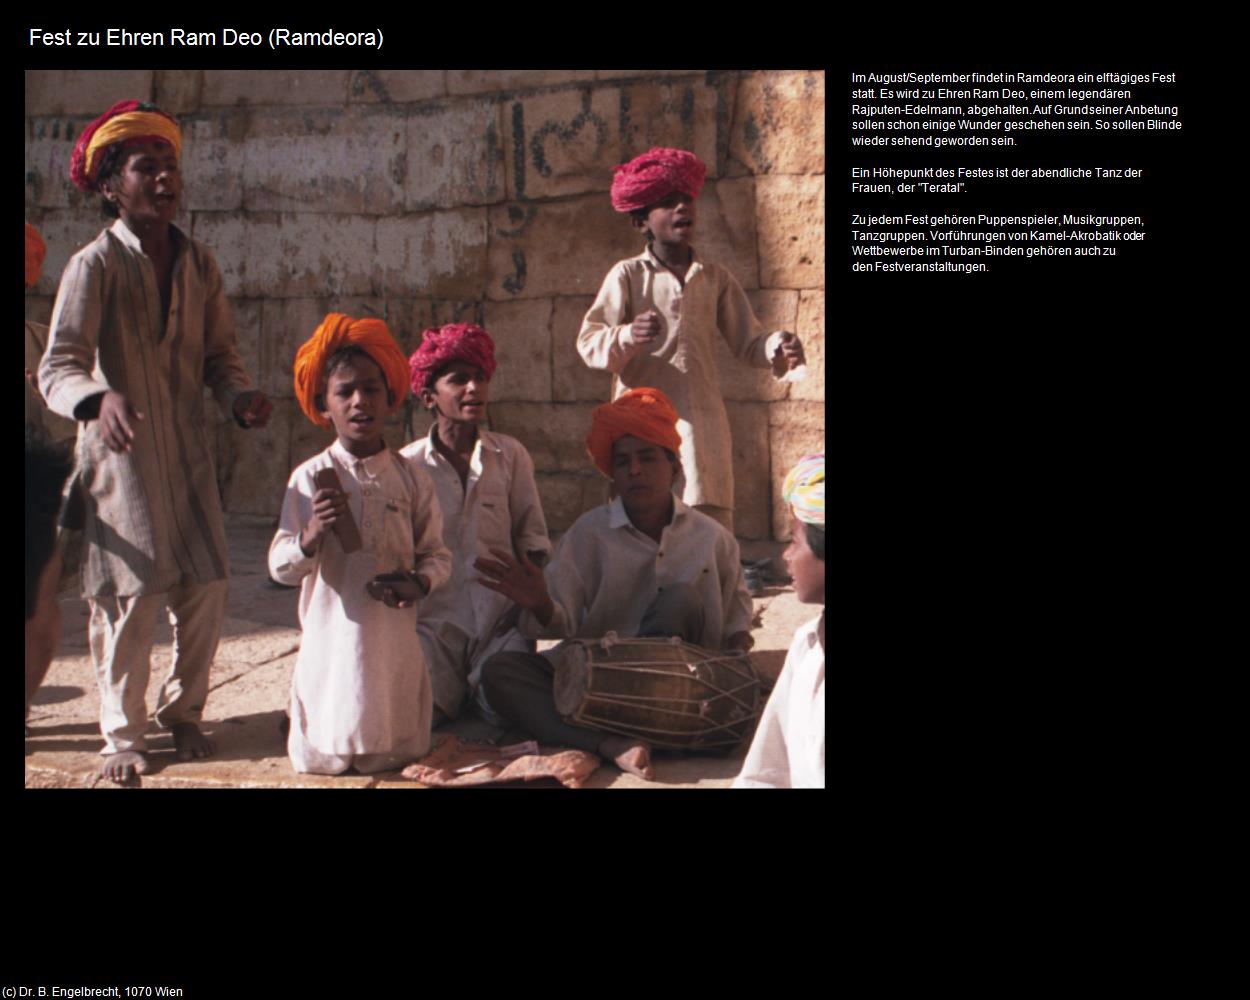 Fest zu Ehren Ram Deo (Ramdeora) in Rajasthan - das Land der Könige